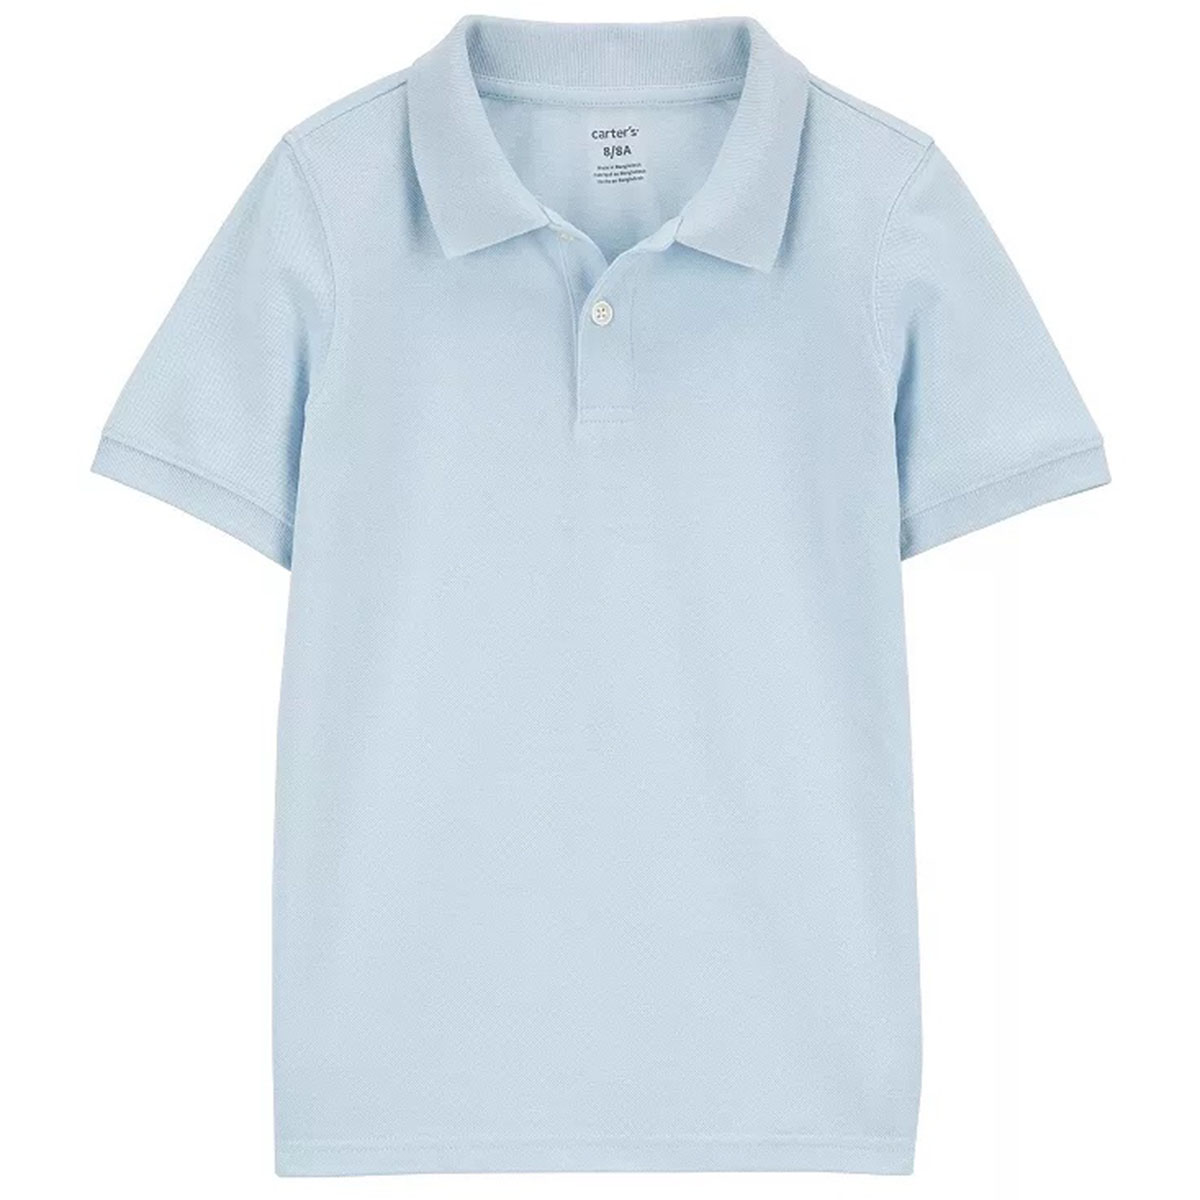 Boys (4-7) Carters(R) Short Sleeve Solid Polo - Light Blue